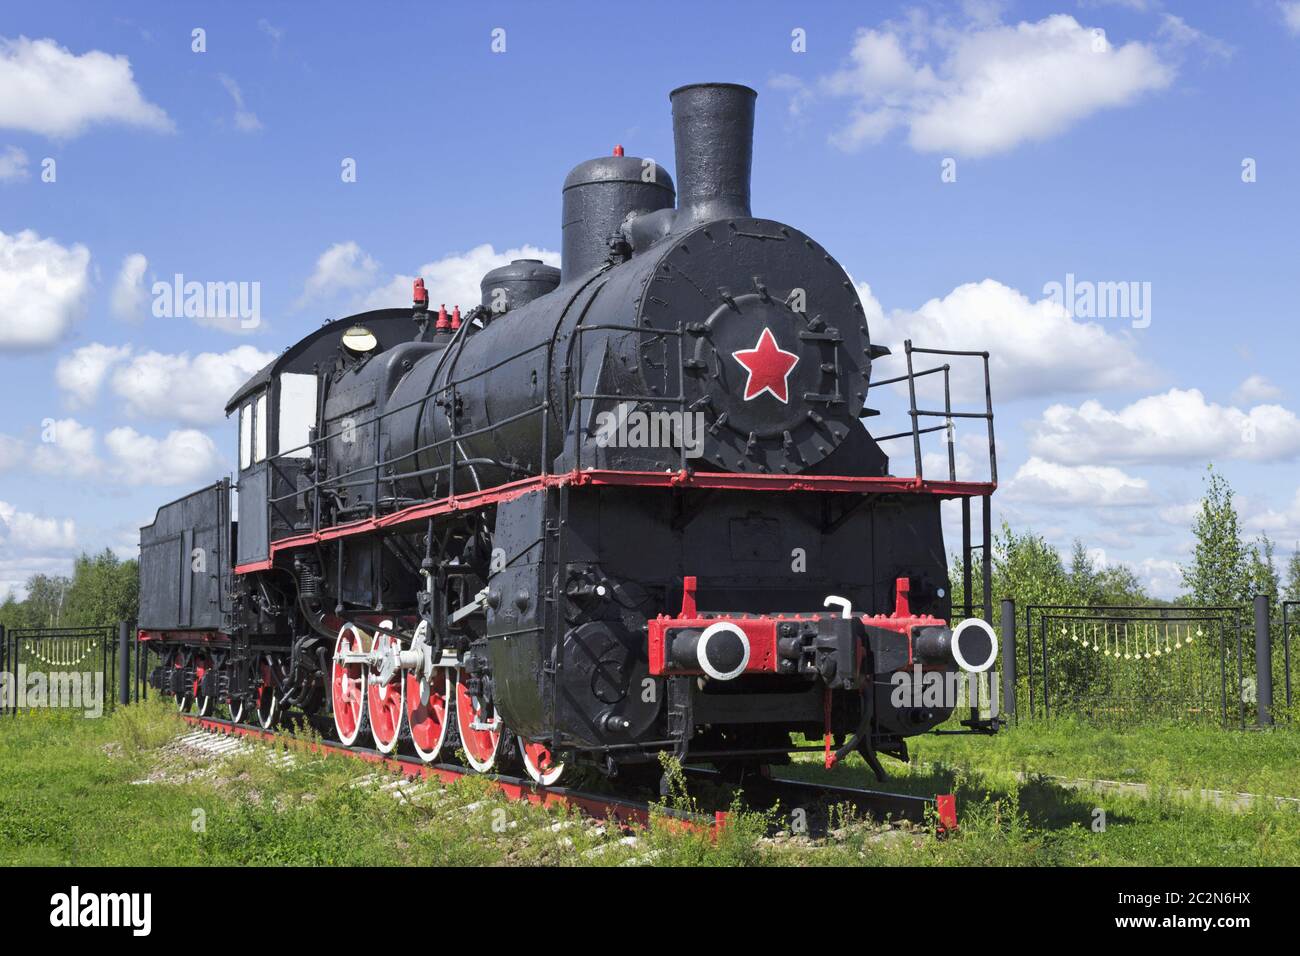 Tipica locomotiva russa anni '20 del secolo scorso Foto Stock